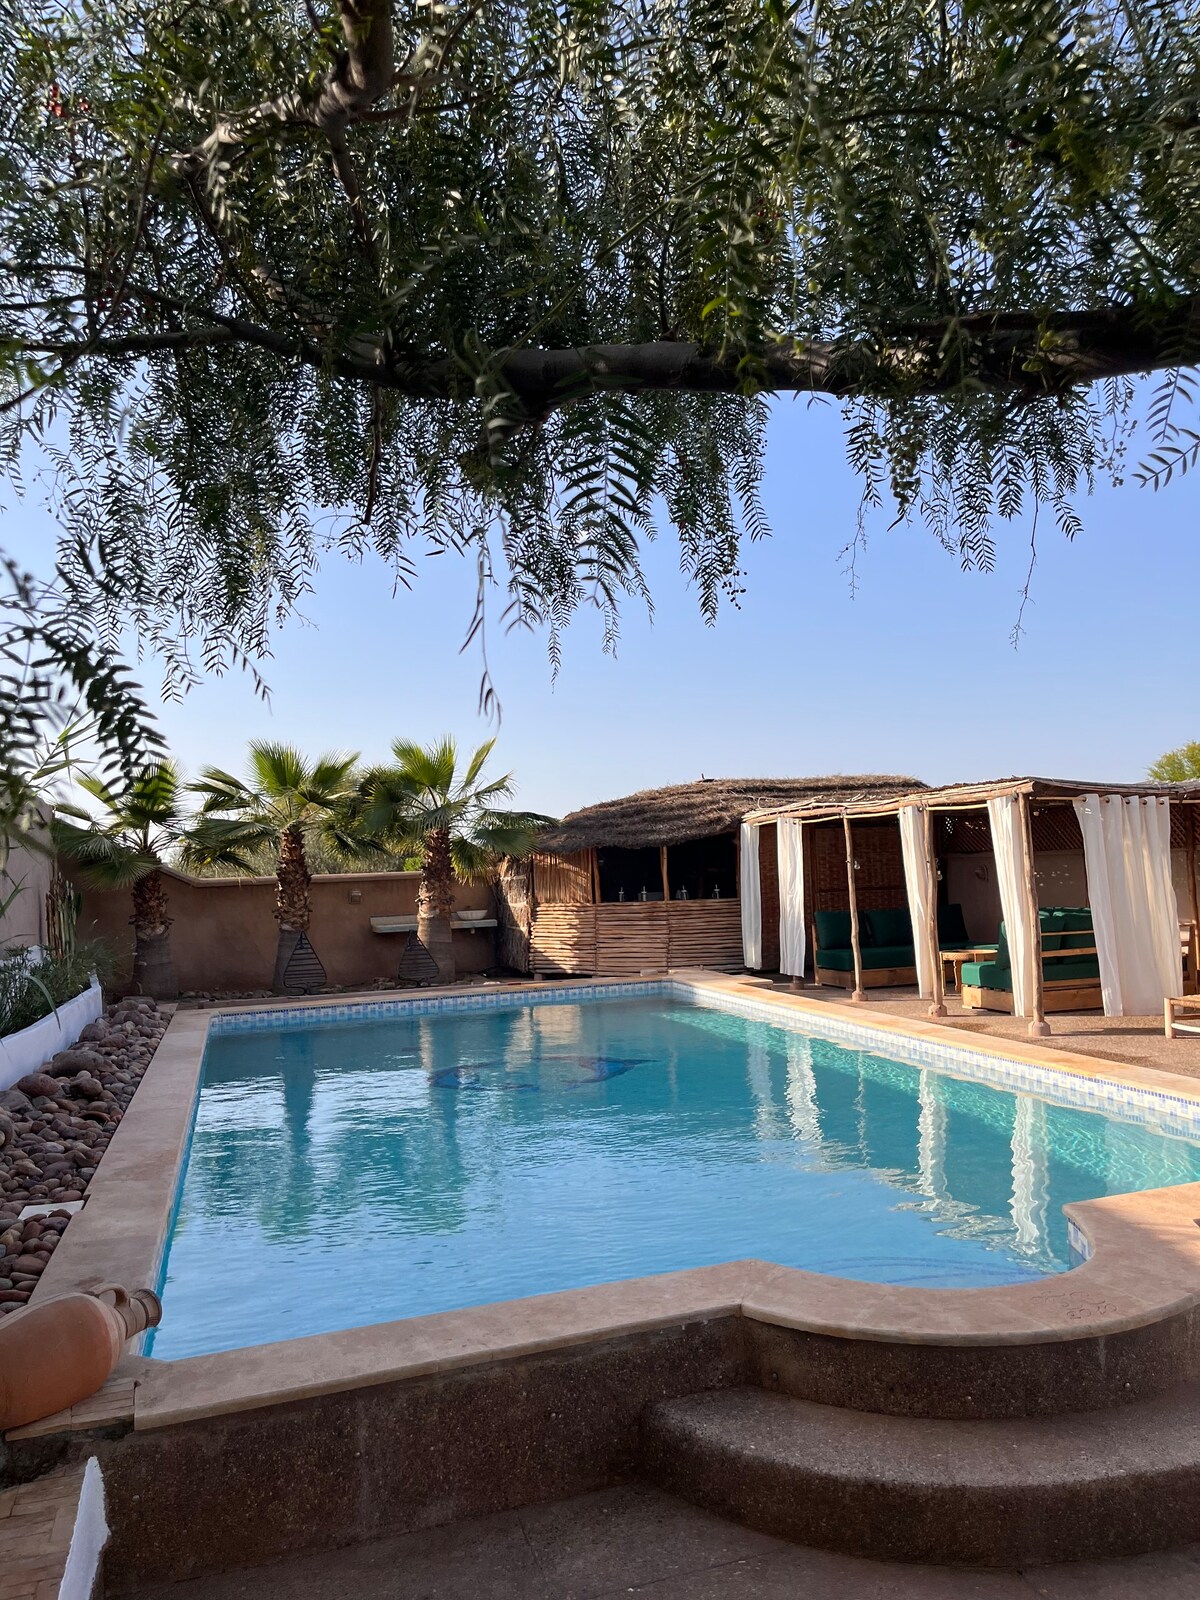 Villa 3 suites/piscine chauffée/Petit-dej offert!